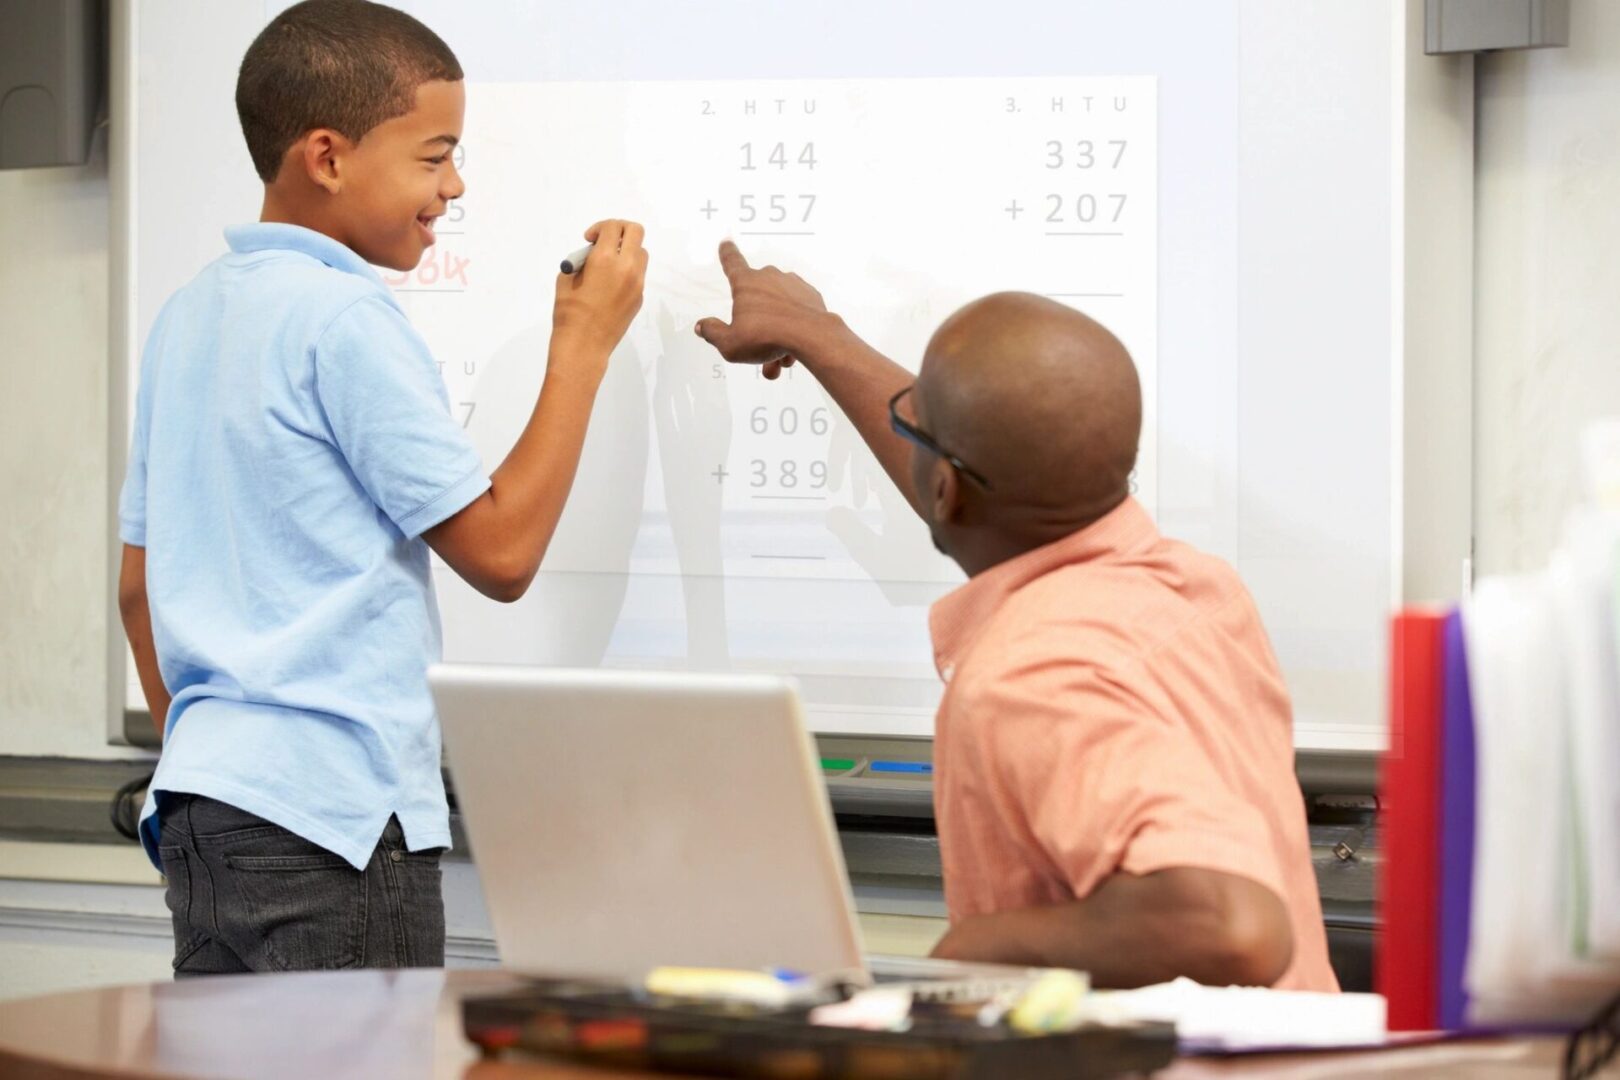 A teacher teaching a student inside a class is shown